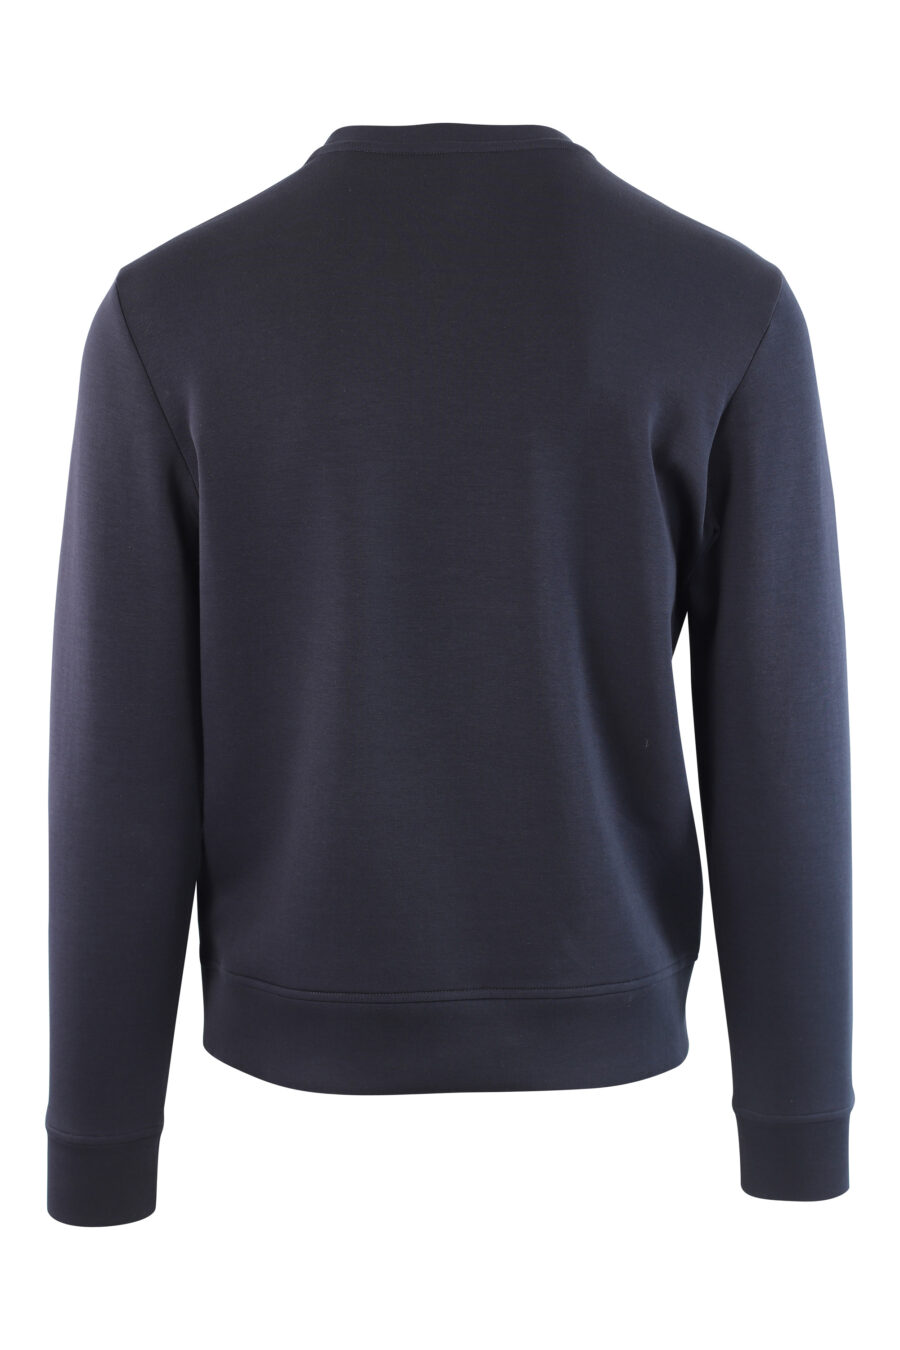 Dunkelblaues Sweatshirt mit ovalem Maxilogo - IMG 3774